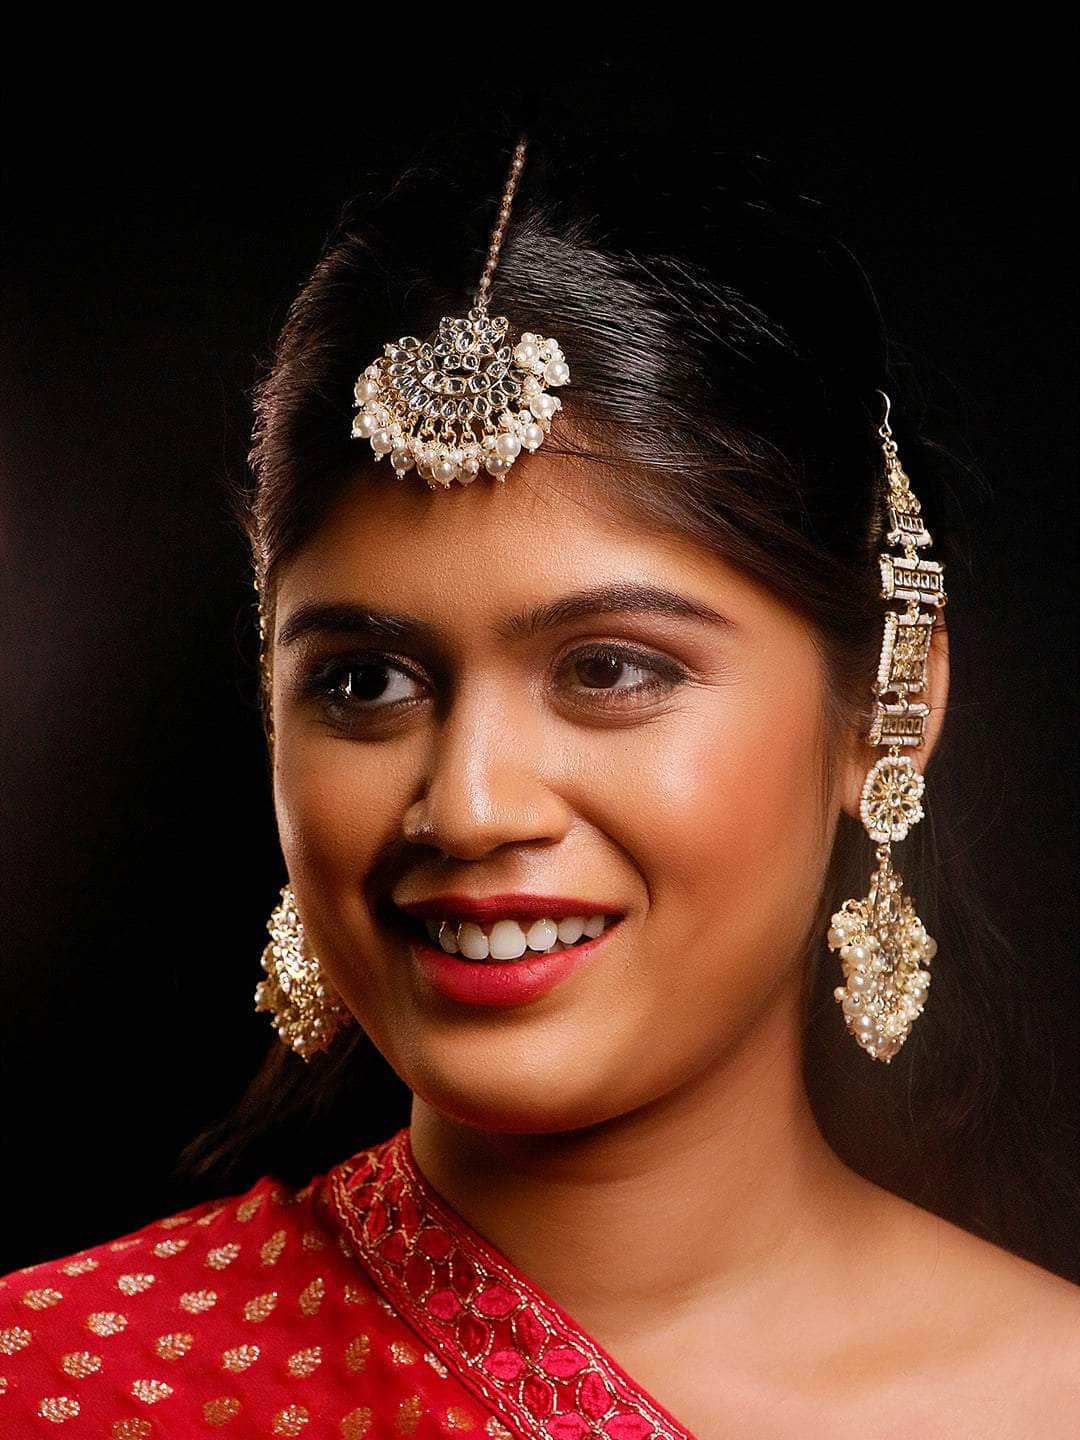 Ishhaara Rajwadi Chandbali Earring and Teeka Set